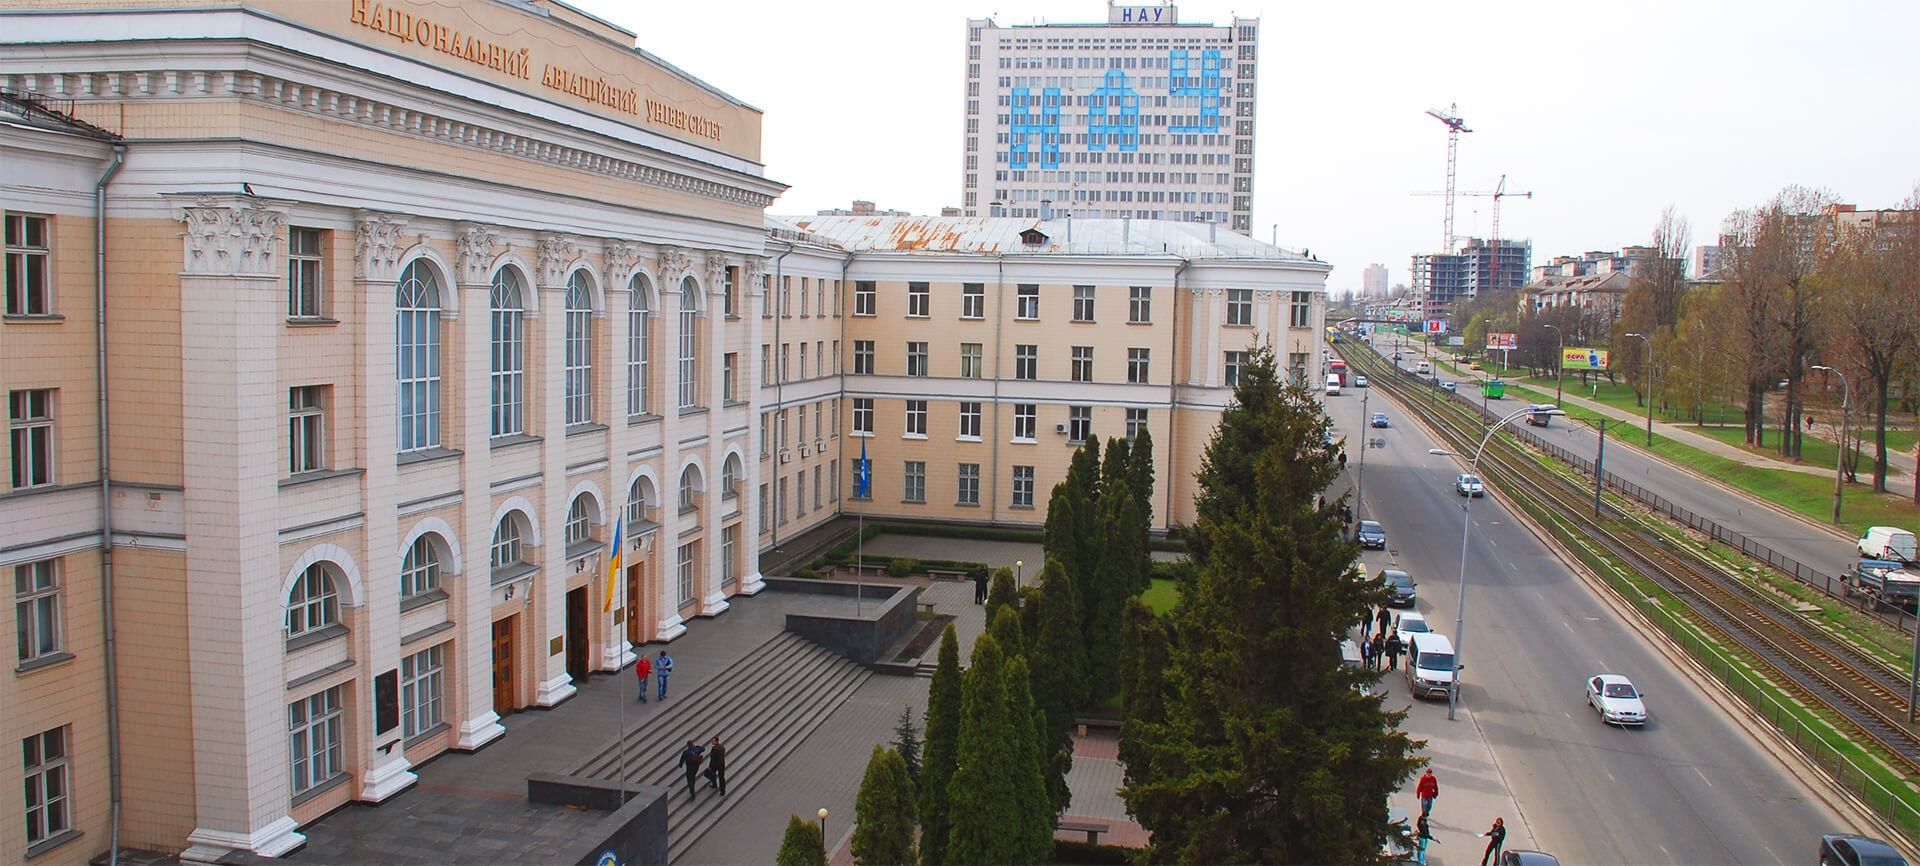 Строительство ЖК на территории киевского авиационного университета заблокировали